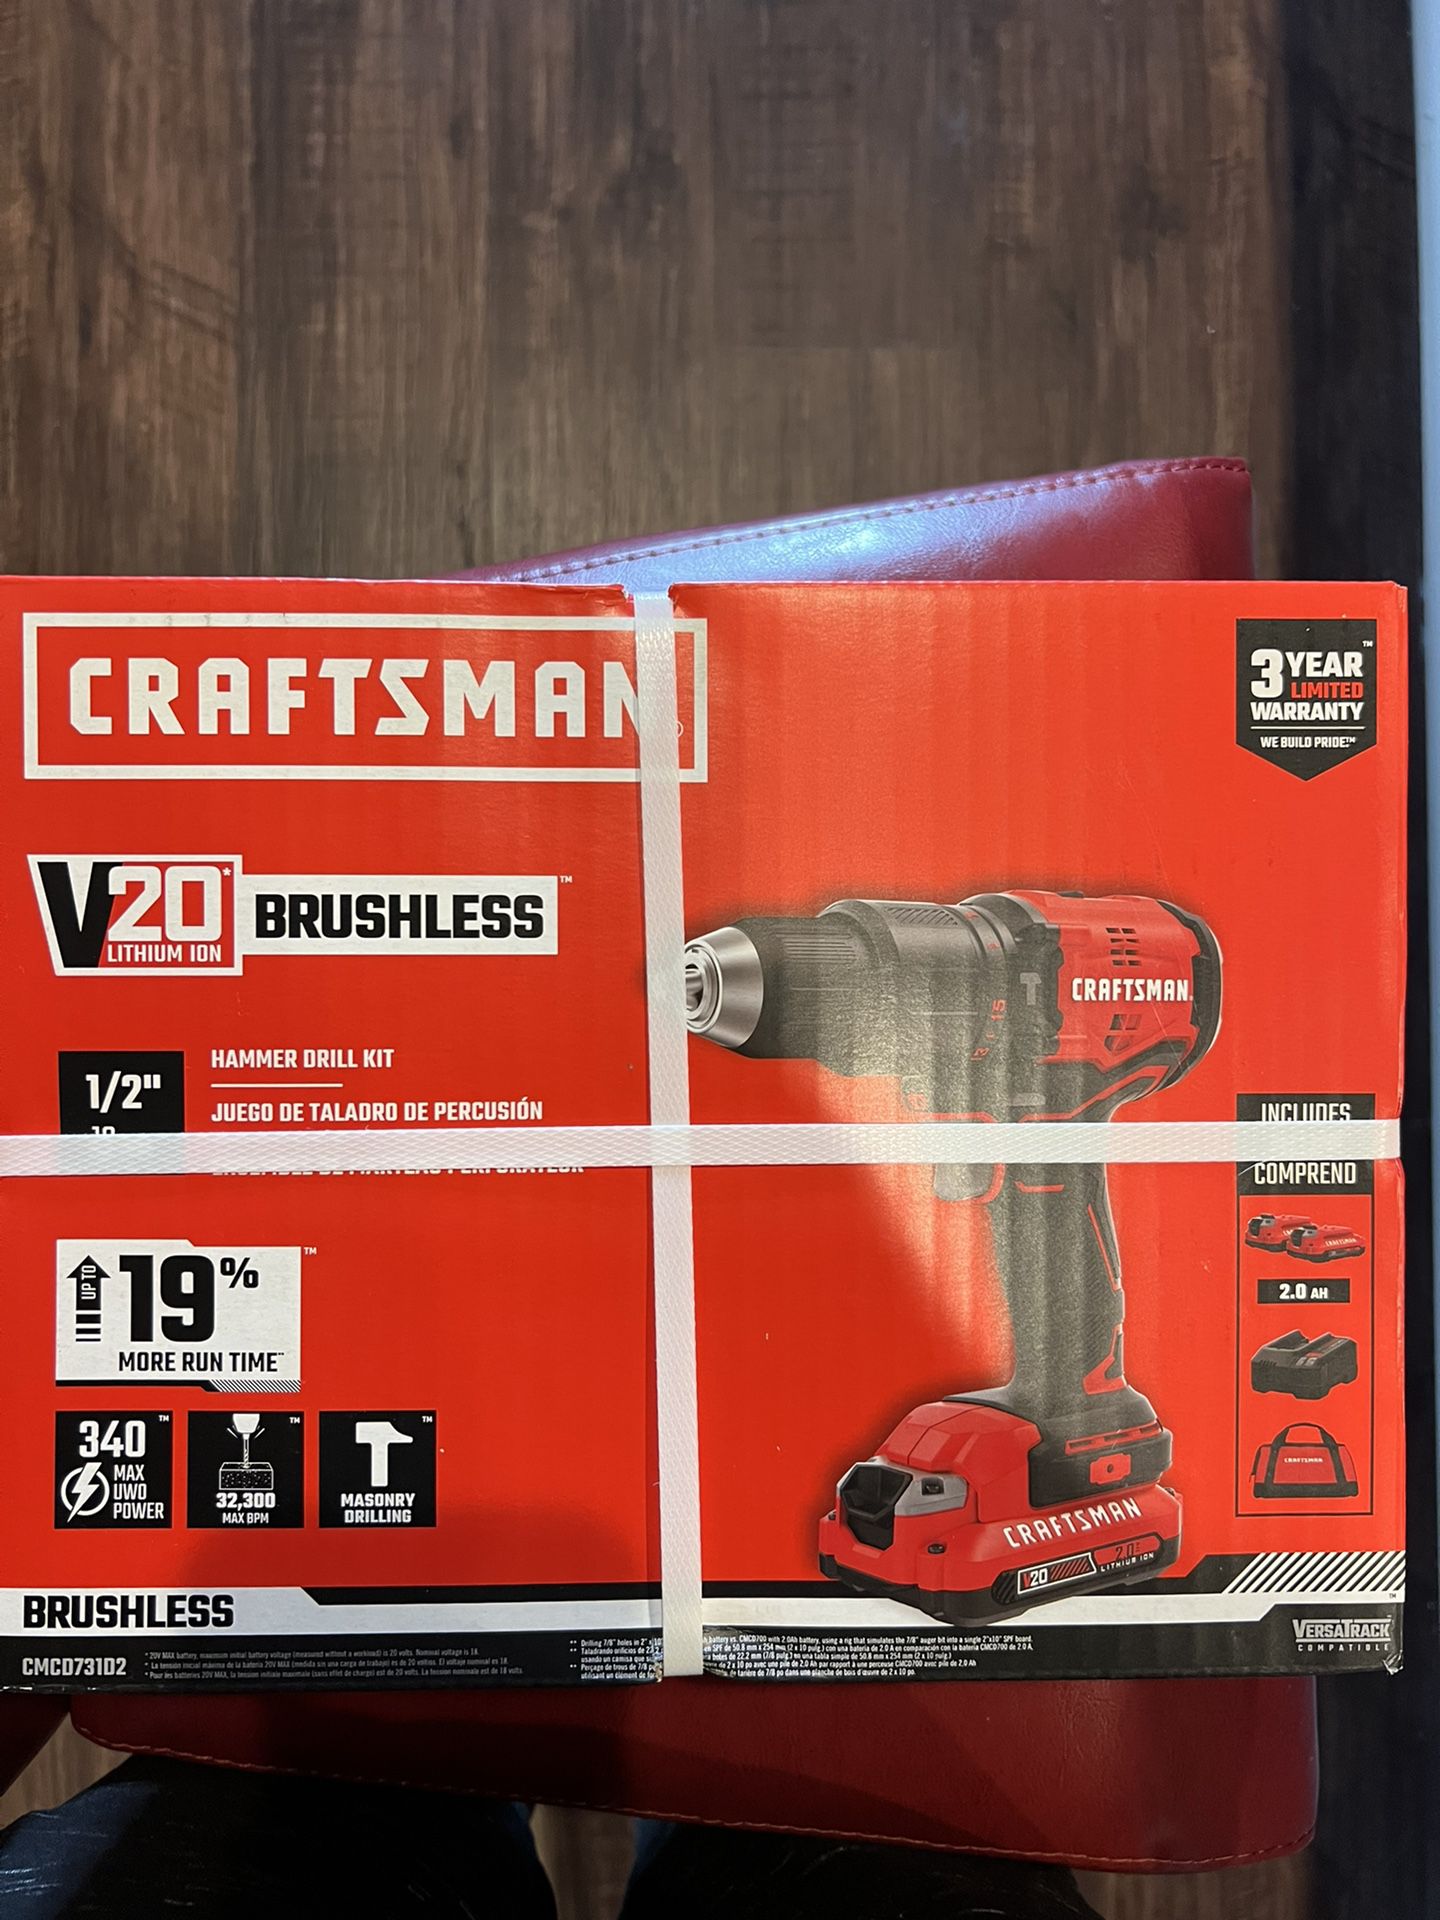 Craftsman 20v Hammer Drill Kit 